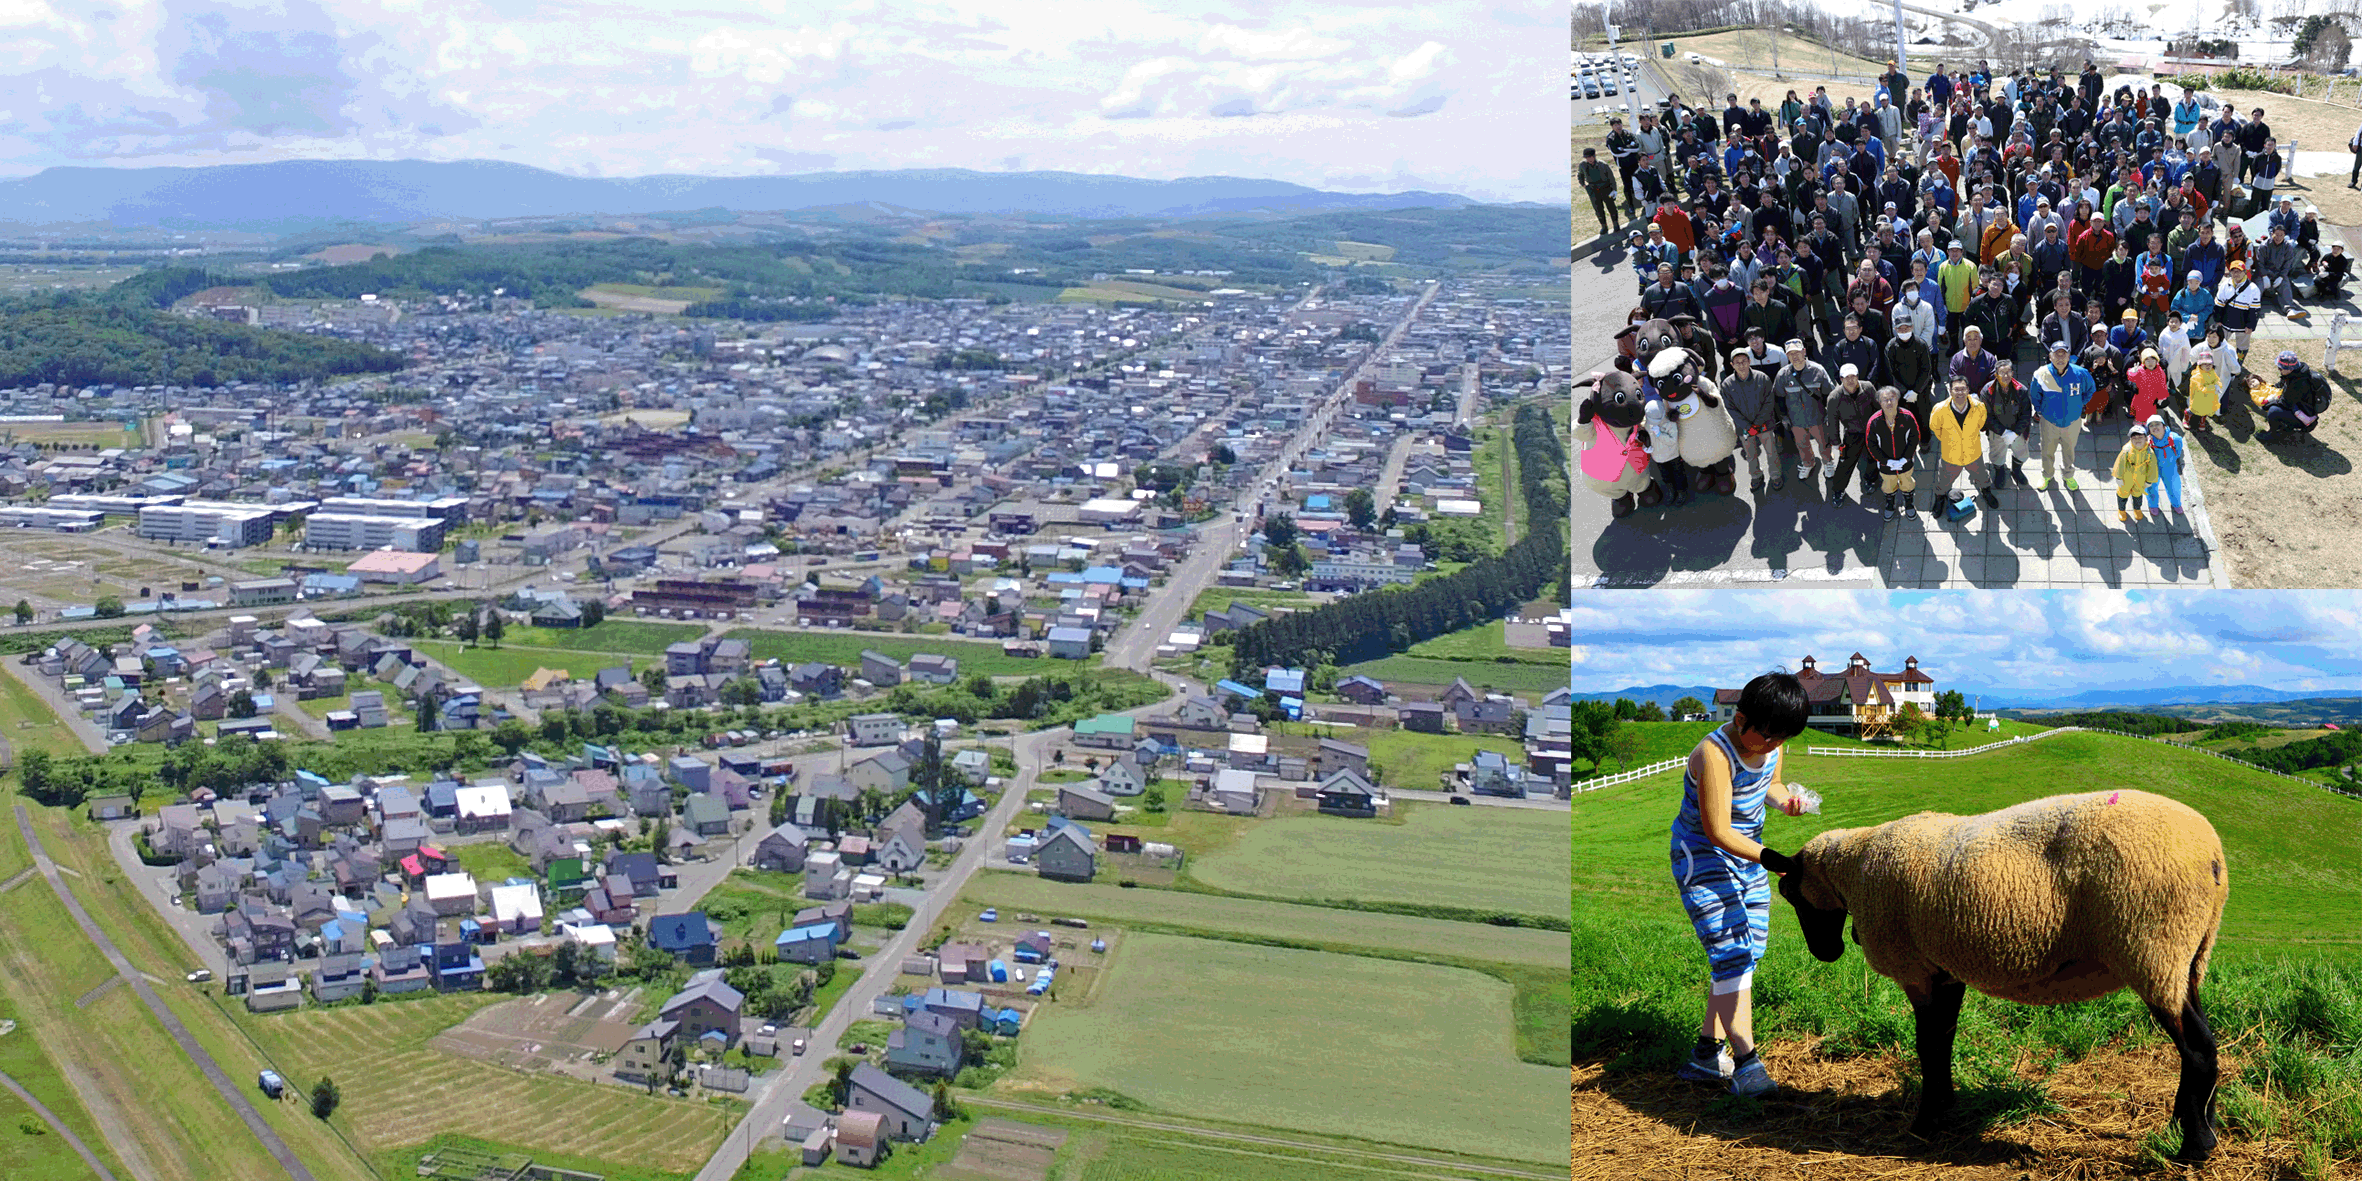 左：士別市の郊外を写した航空写真、右上：たくさんの市民の人達が集まっている様子を上から写した写真、右下：牧草地で羊にえさを与えている男の子の写真